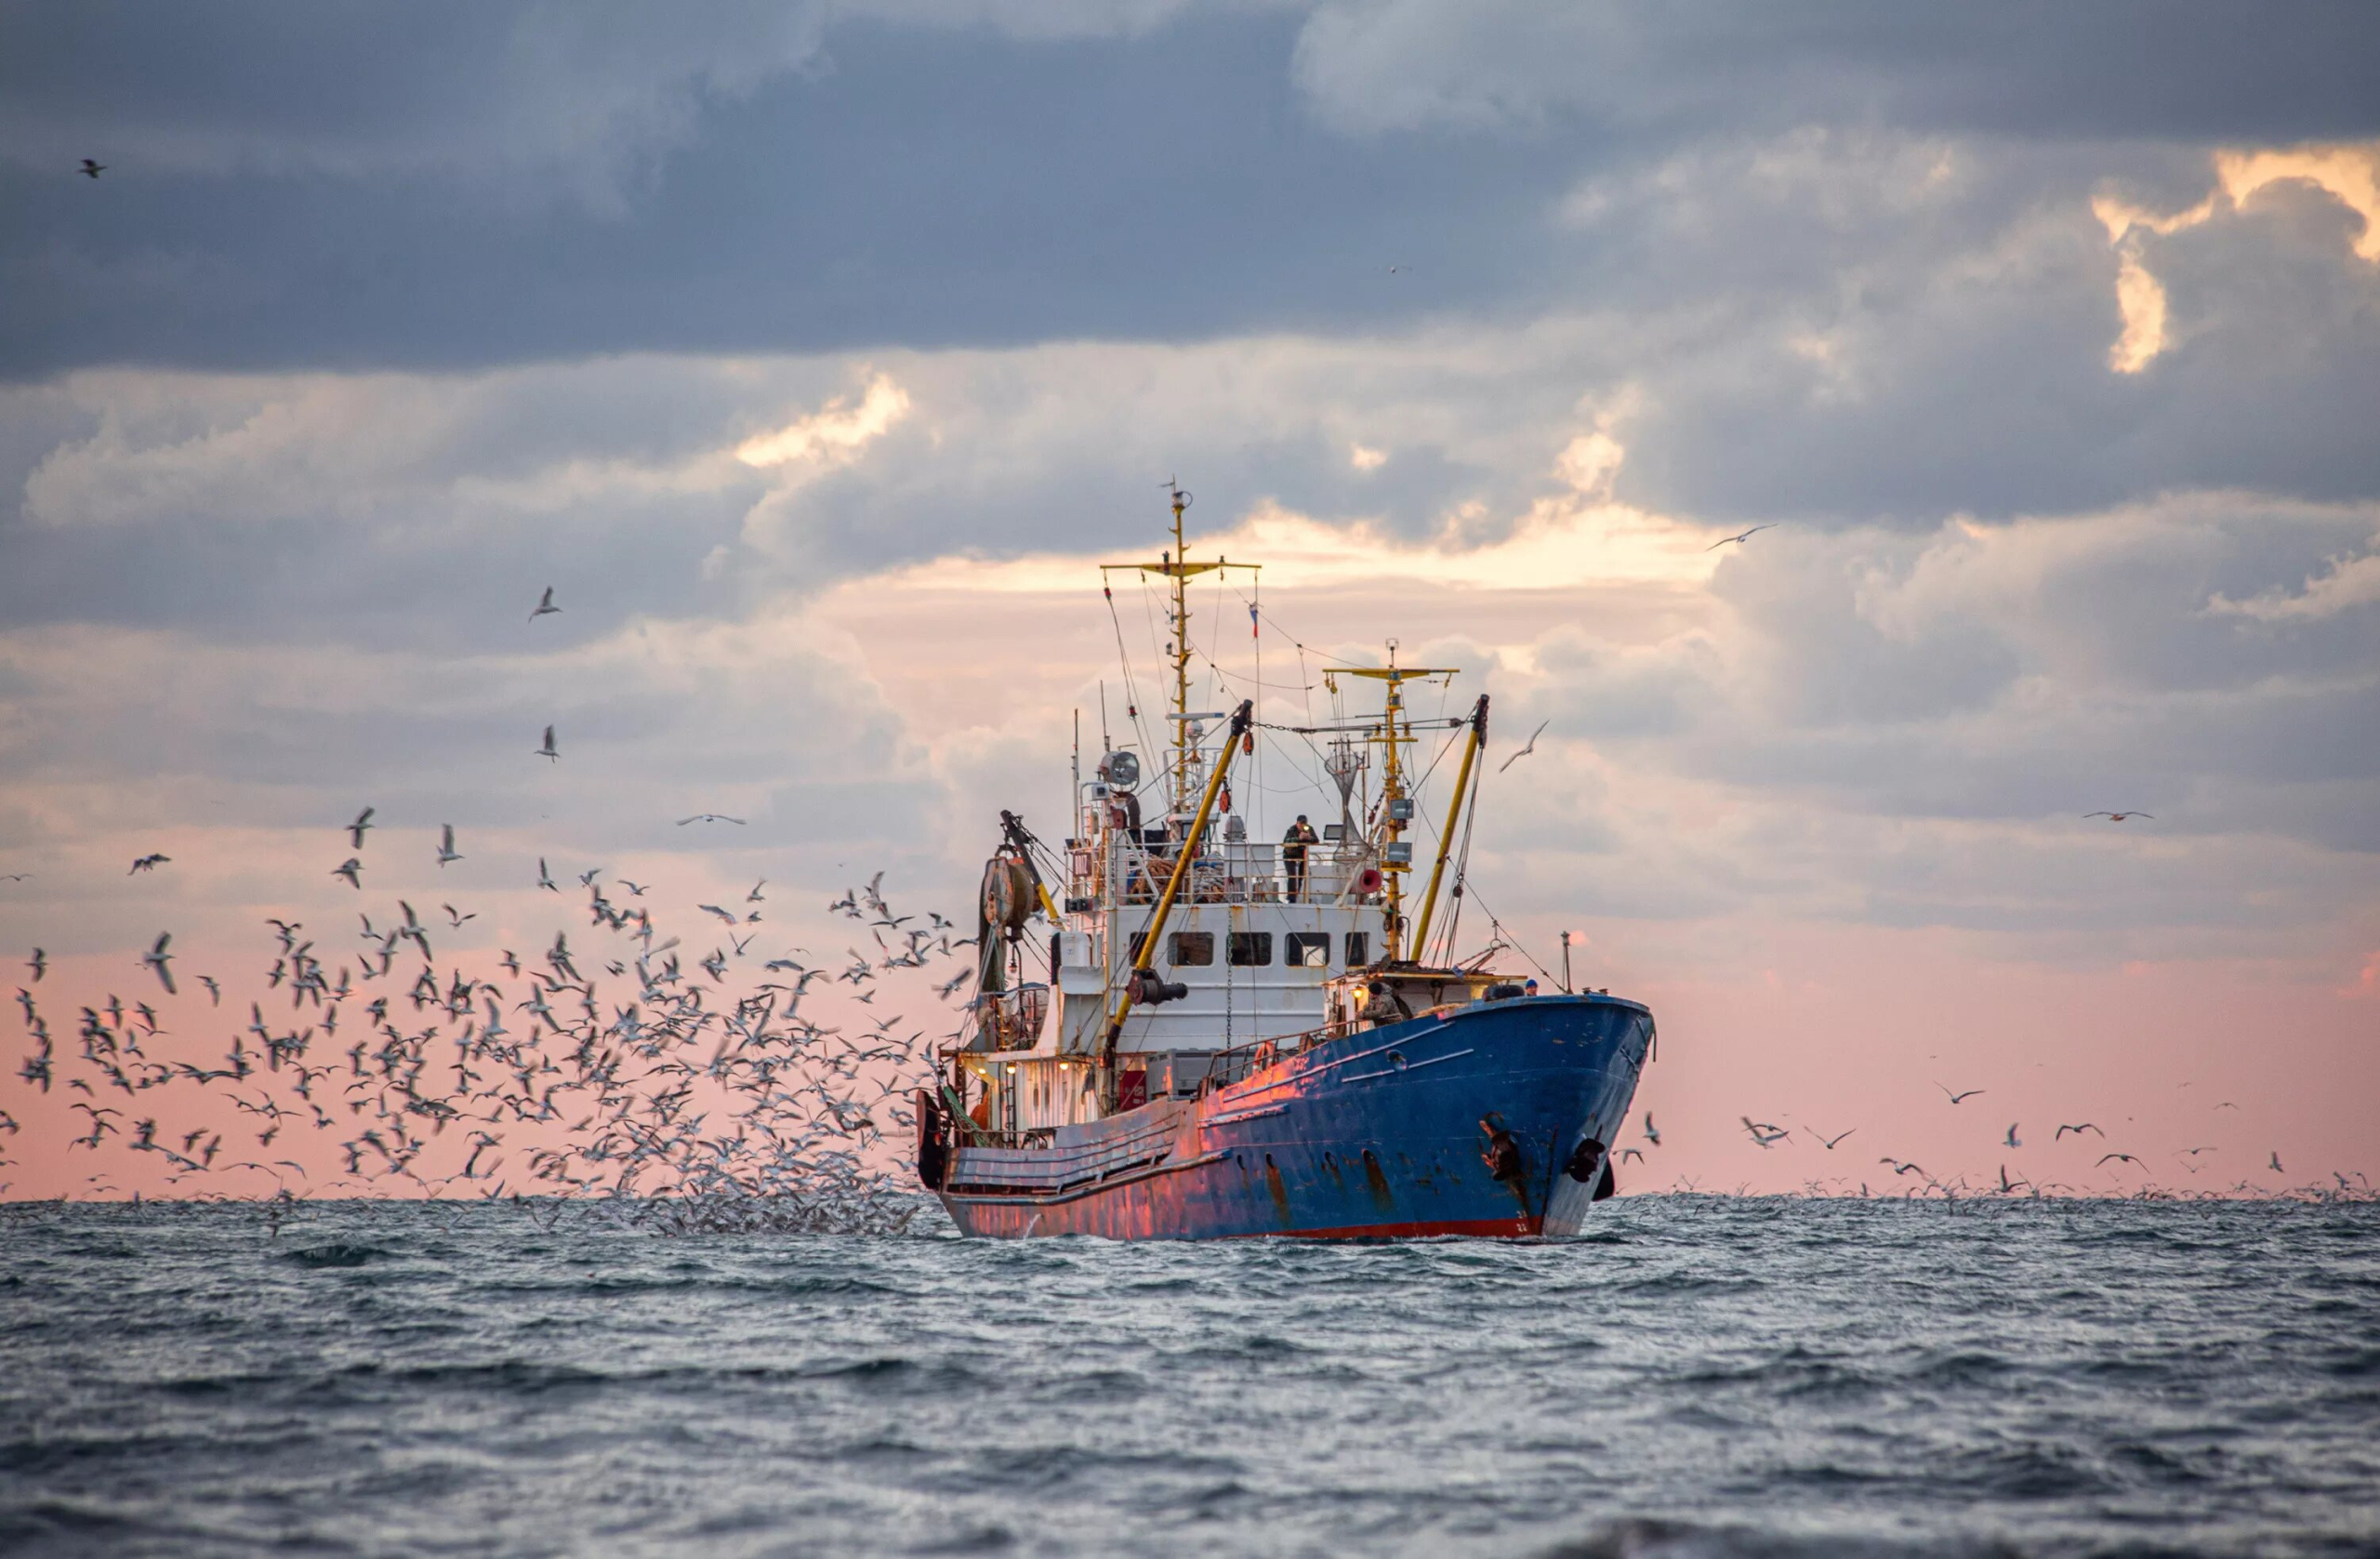 اجتماع لجنة بالبرلمان الأوروبي يعيد تجديد بروتوكول الصيد مع المغرب للواجهة